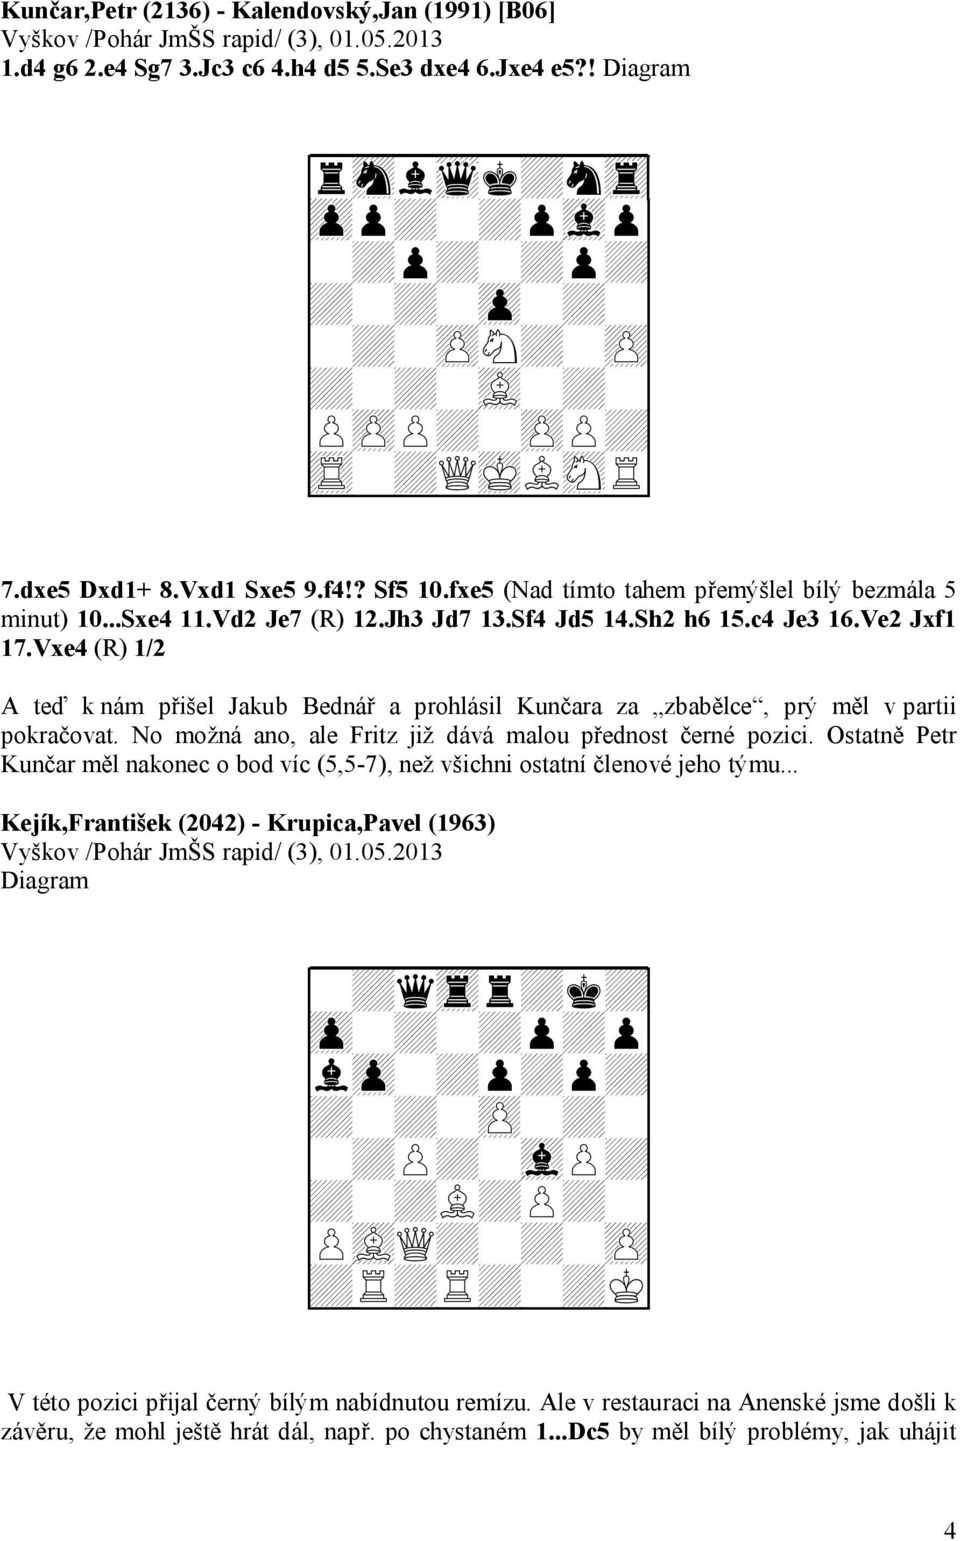 fxe5 (Nad tímto tahem přemýšlel bílý bezmála 5 minut) 10...Sxe4 11.Vd2 Je7 (R) 12.Jh3 Jd7 13.Sf4 Jd5 14.Sh2 h6 15.c4 Je3 16.Ve2 Jxf1 17.